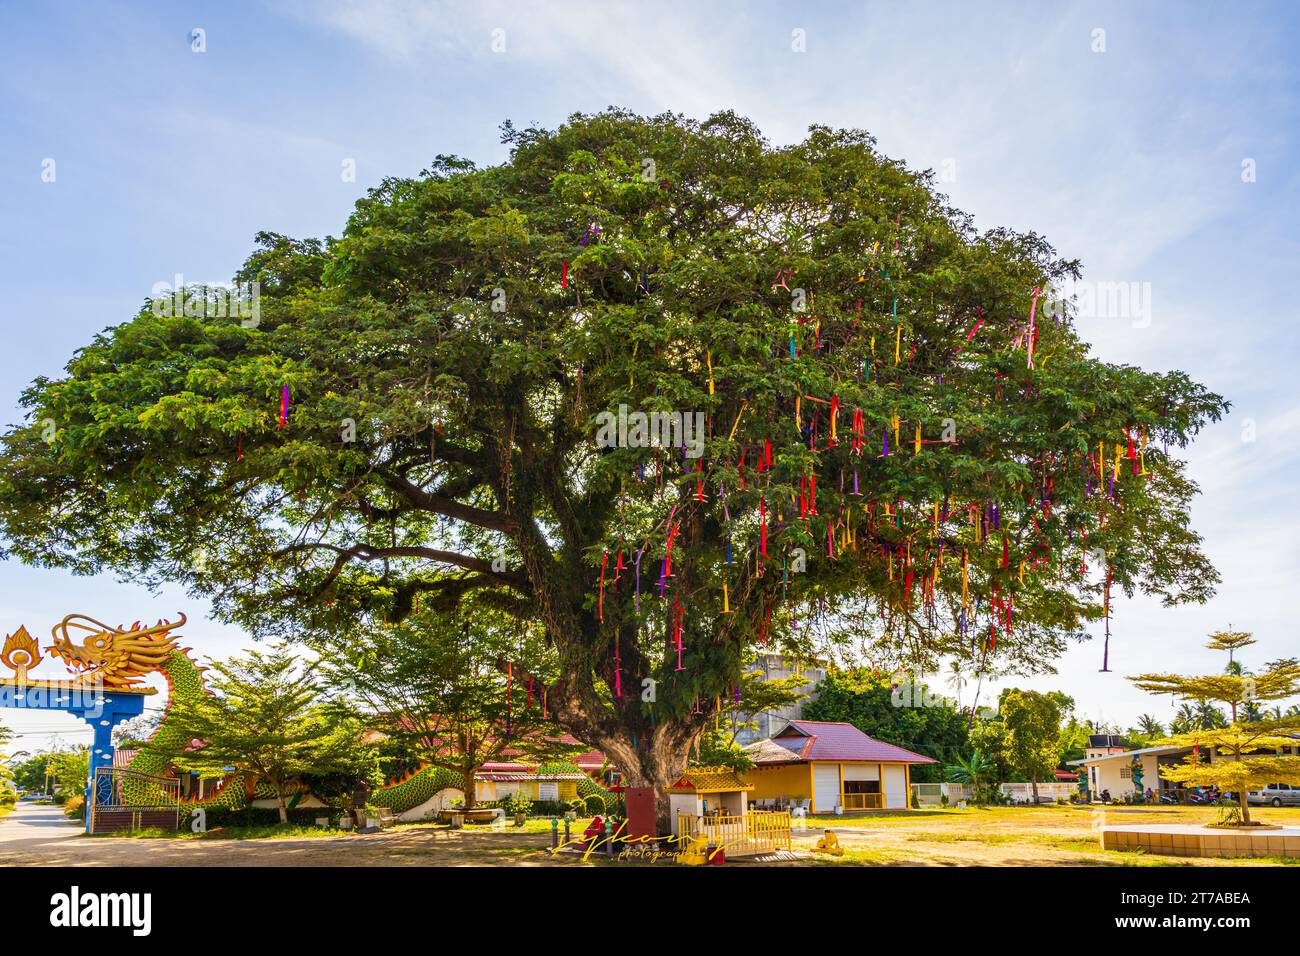 L'arbre souhaitant pour accomplir les prières des visiteurs du temple, ils attachent les rubans colorés sur les branches de l'arbre après leur prière. Banque D'Images